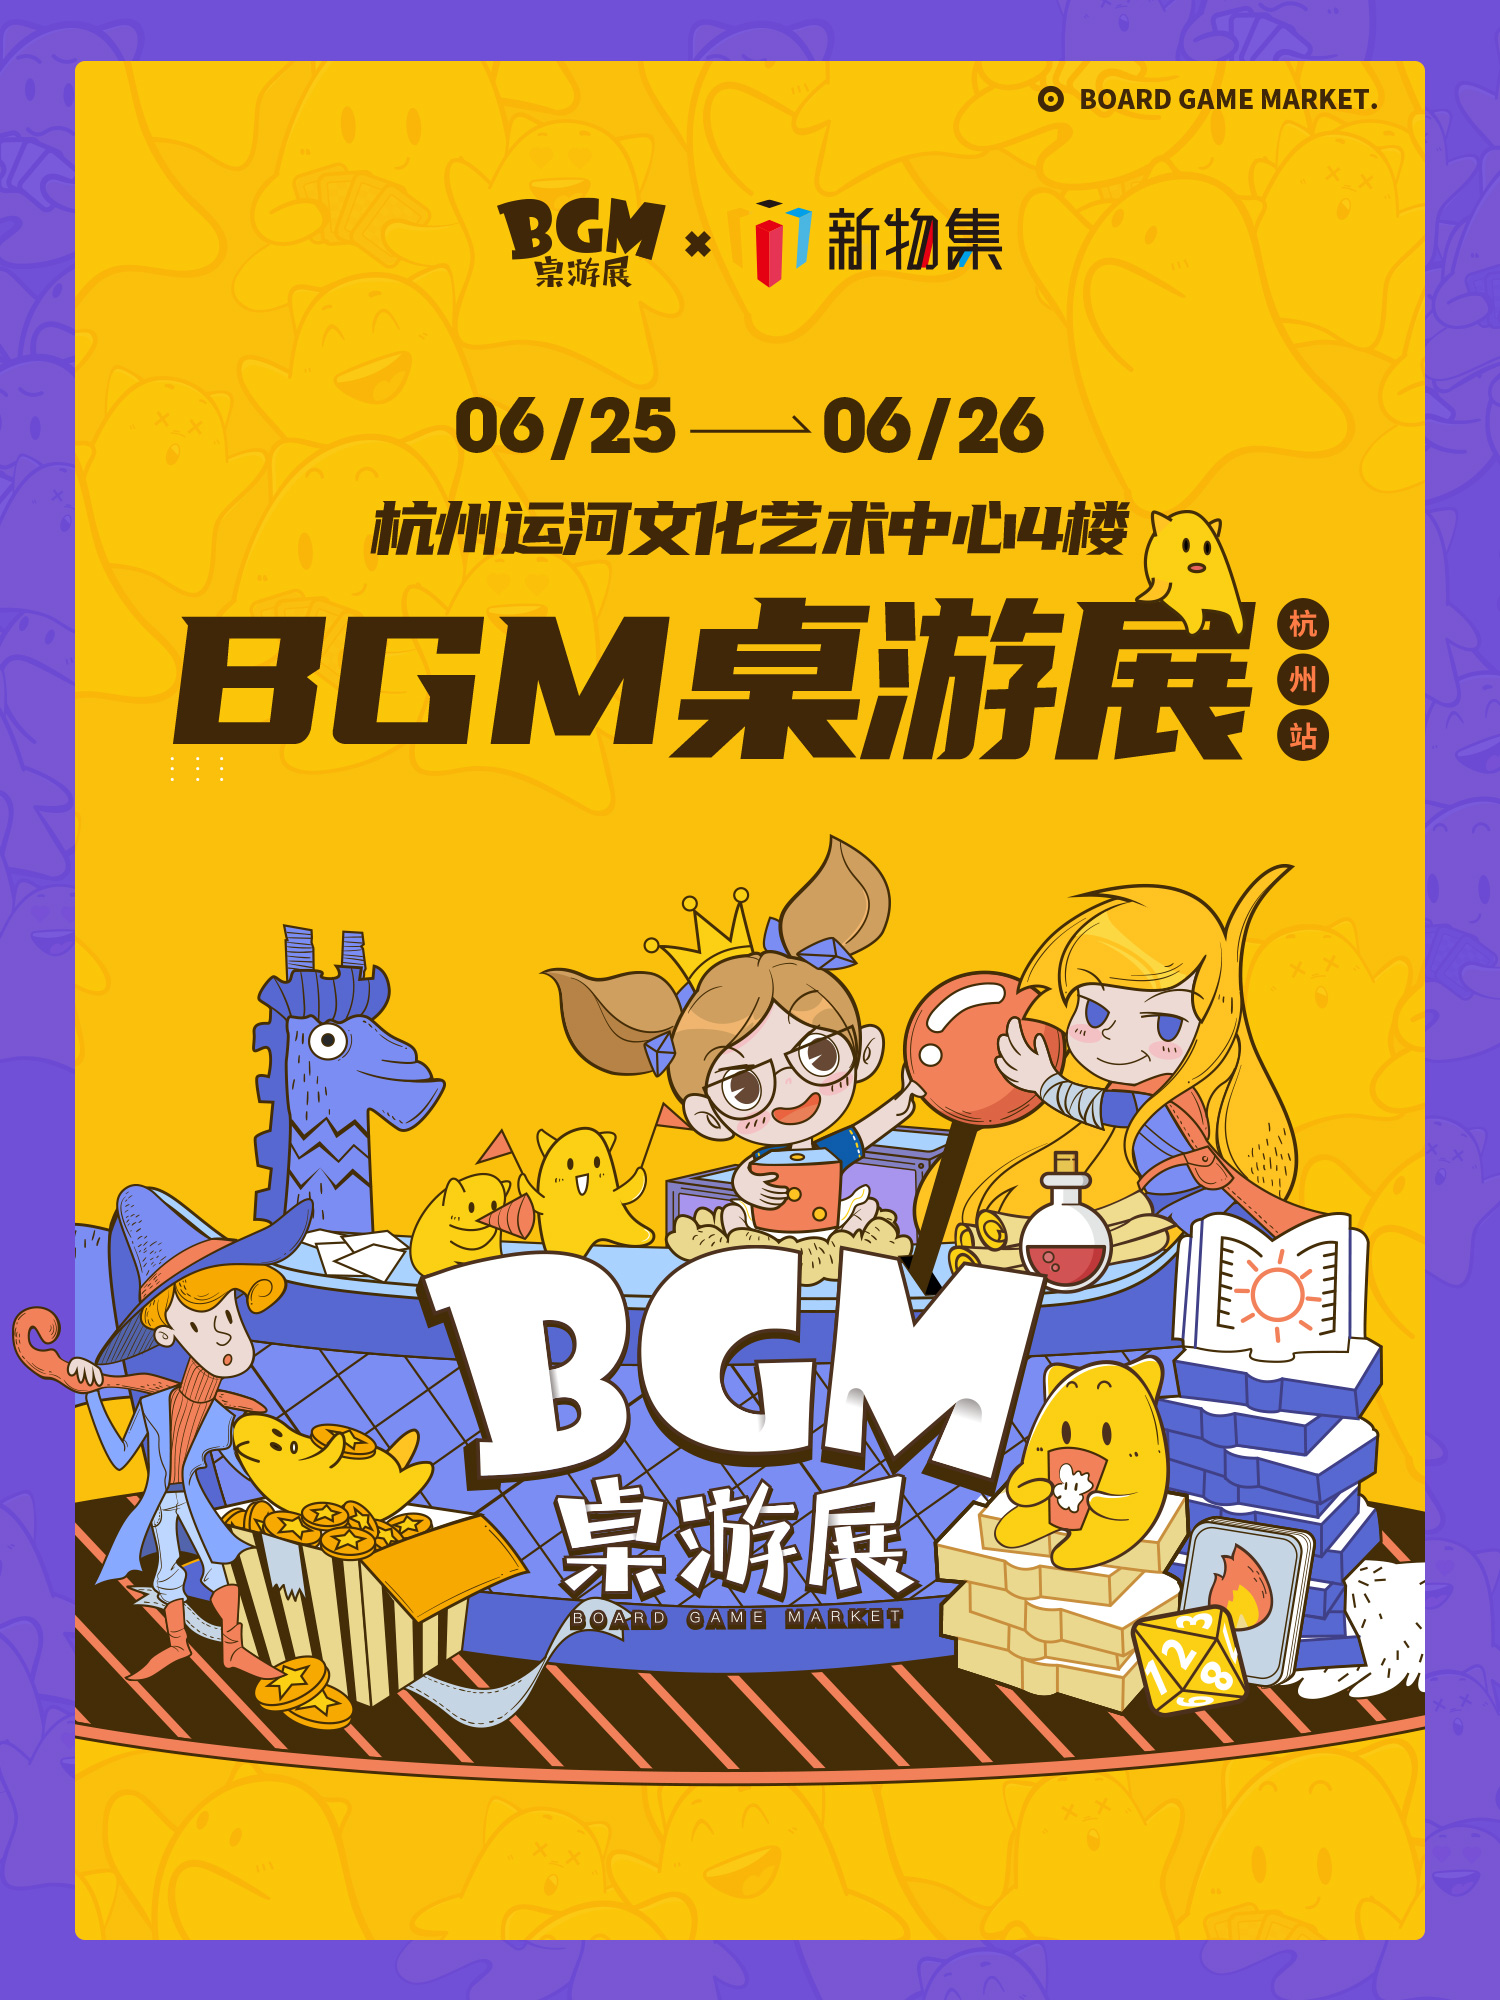 BGM桌游展-杭州站 即将开票！数量有限，快来抢票吧